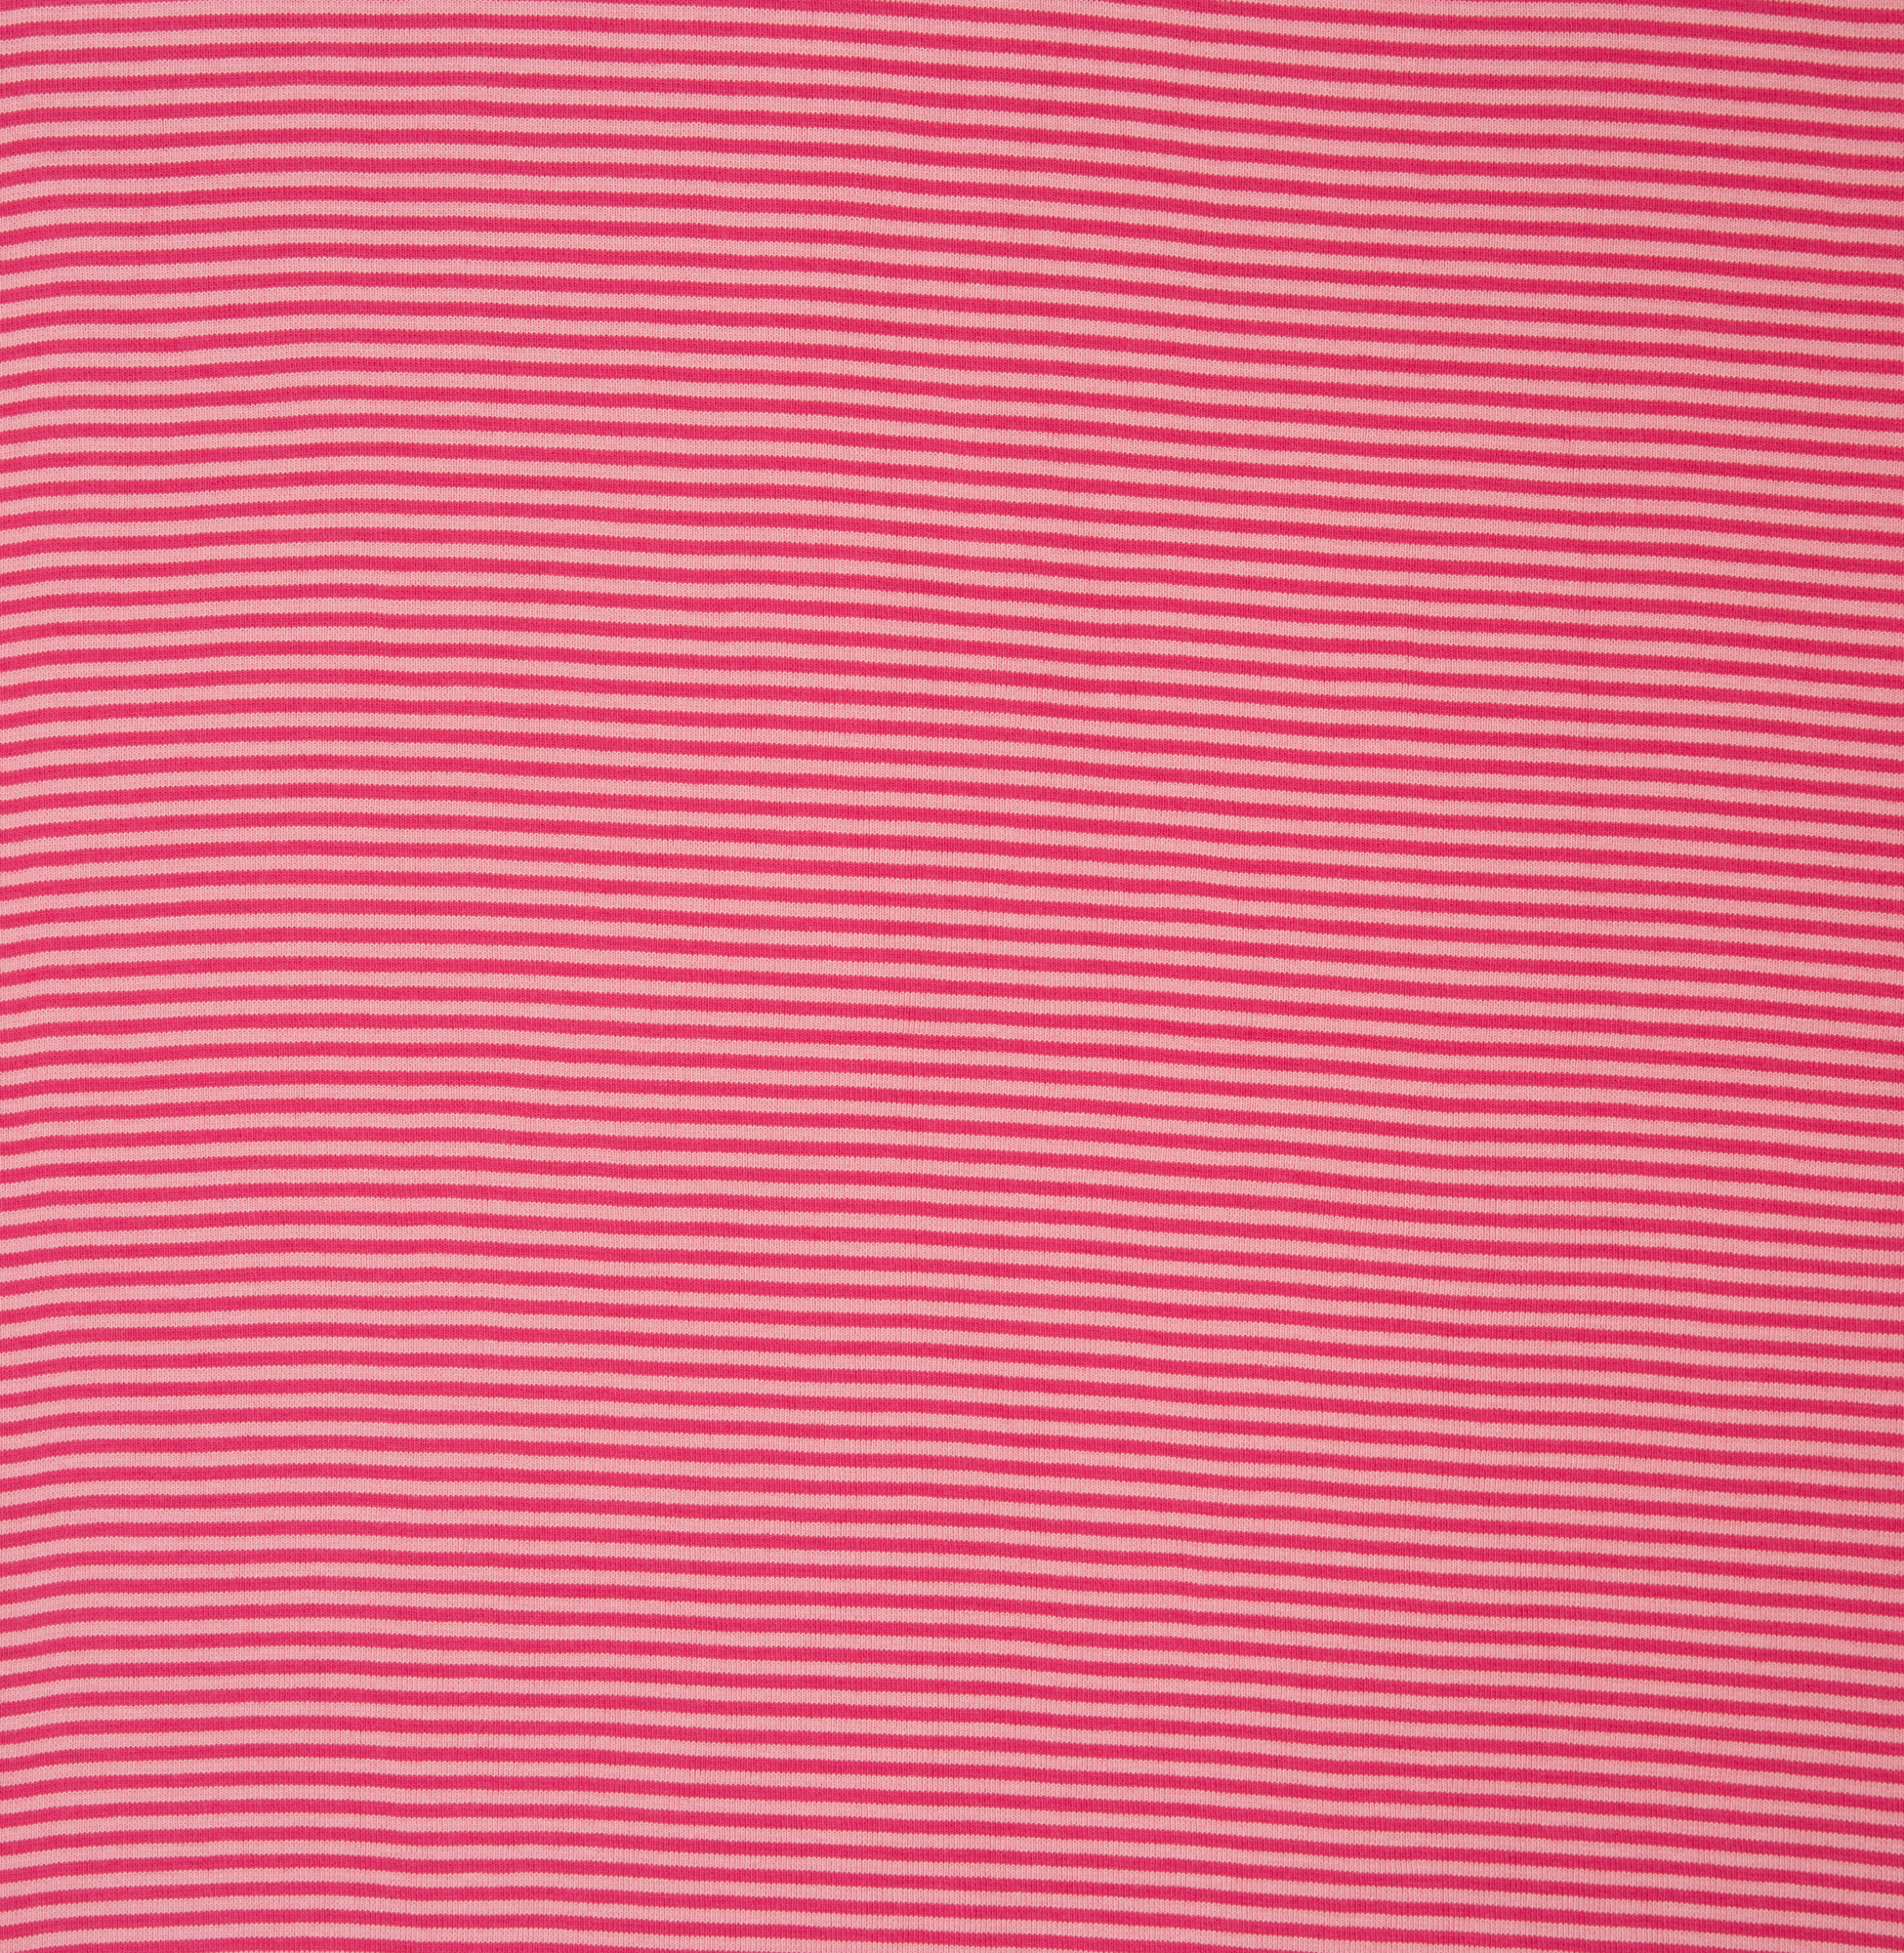 Bündchenware Andy in rosa/ erika gestreift